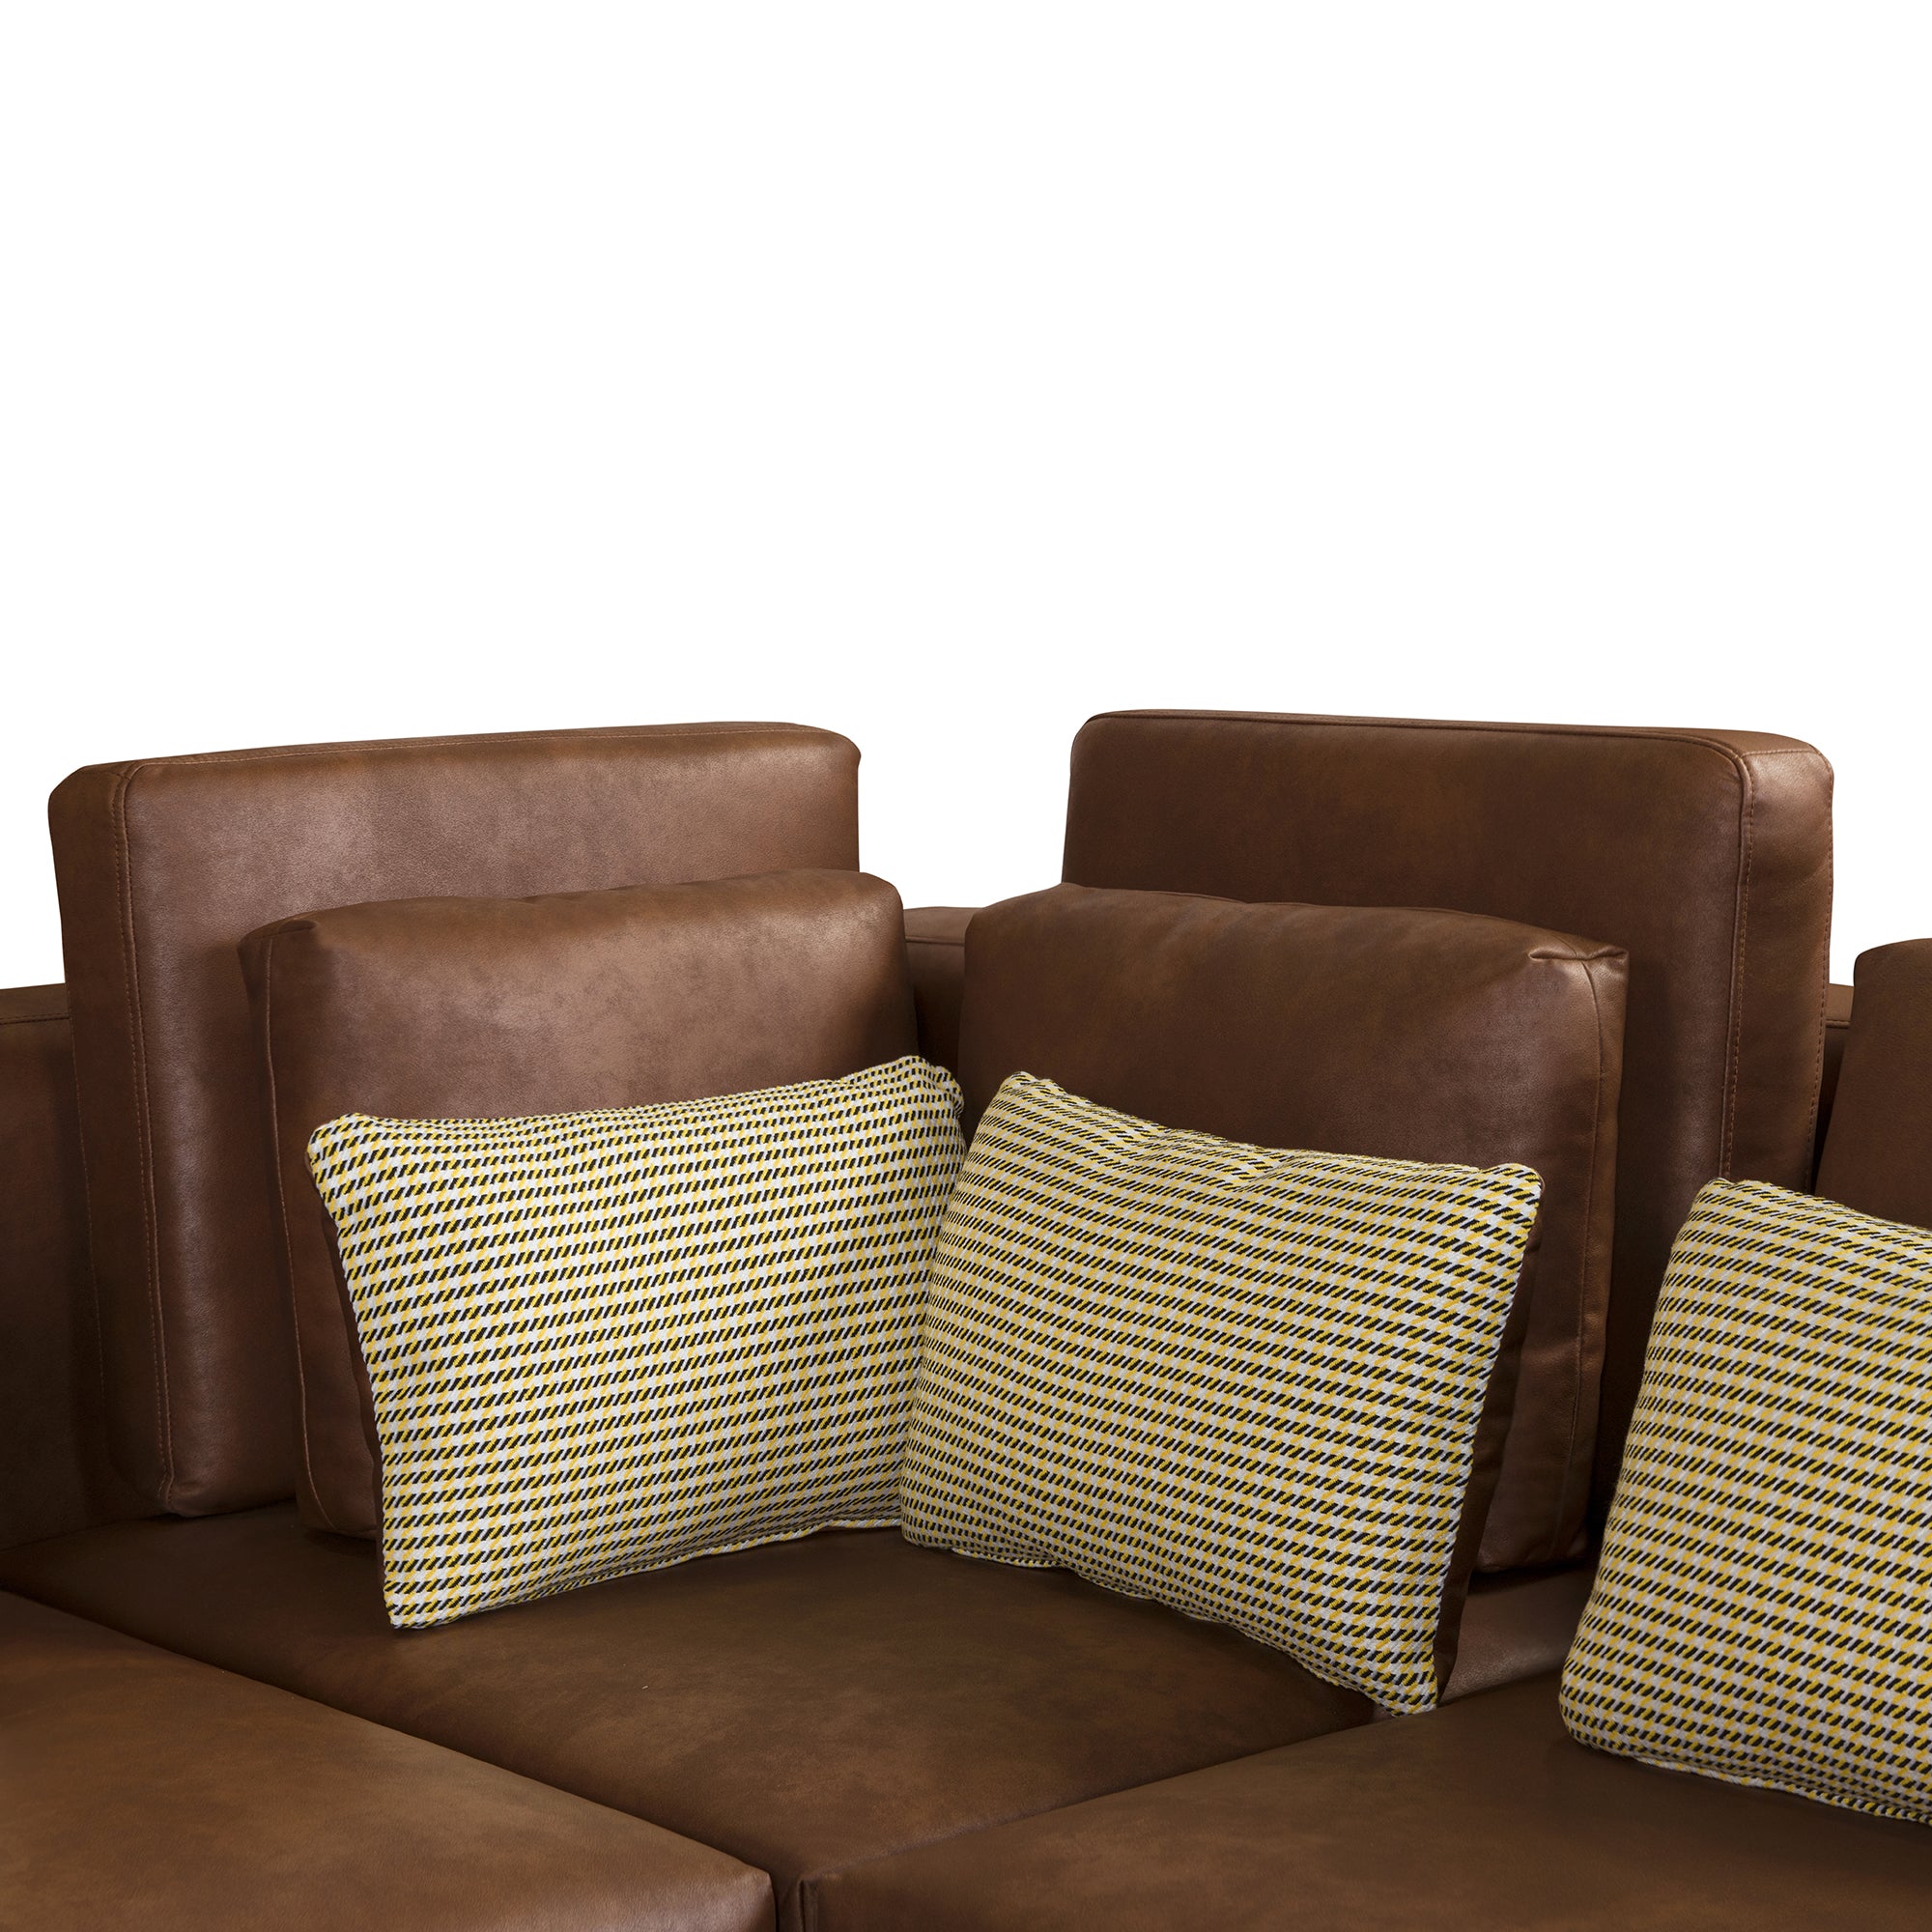 Modular Sectional Sofa Corner Sofa with Ottoman-Brown